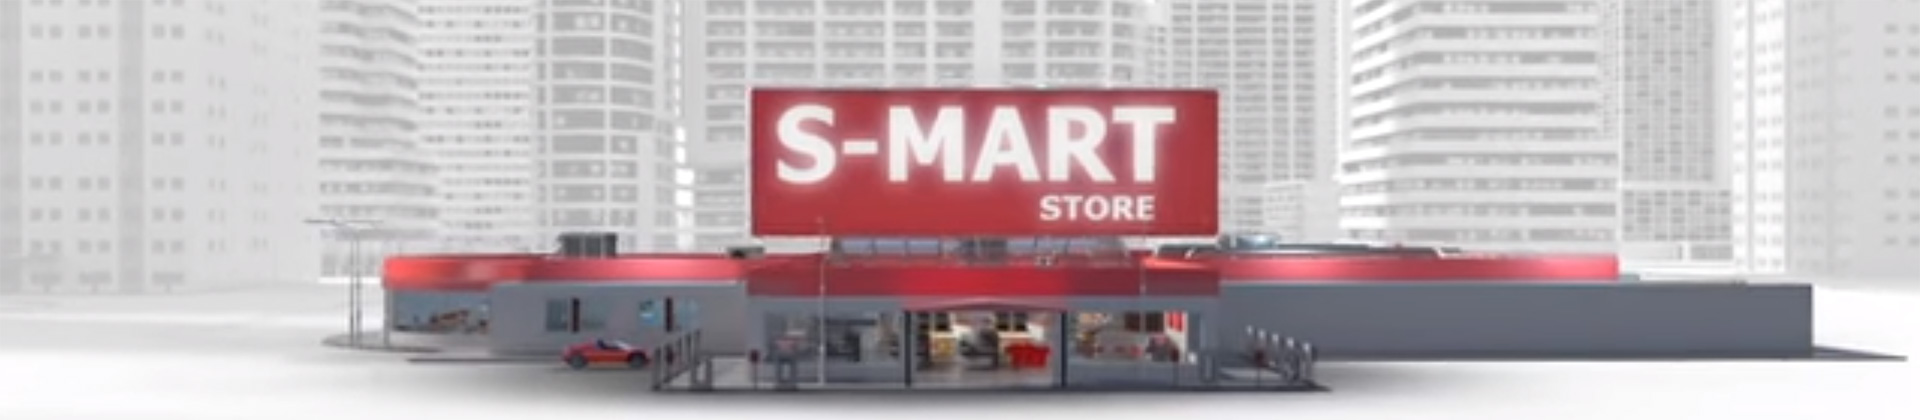 Smart store video - Danfoss